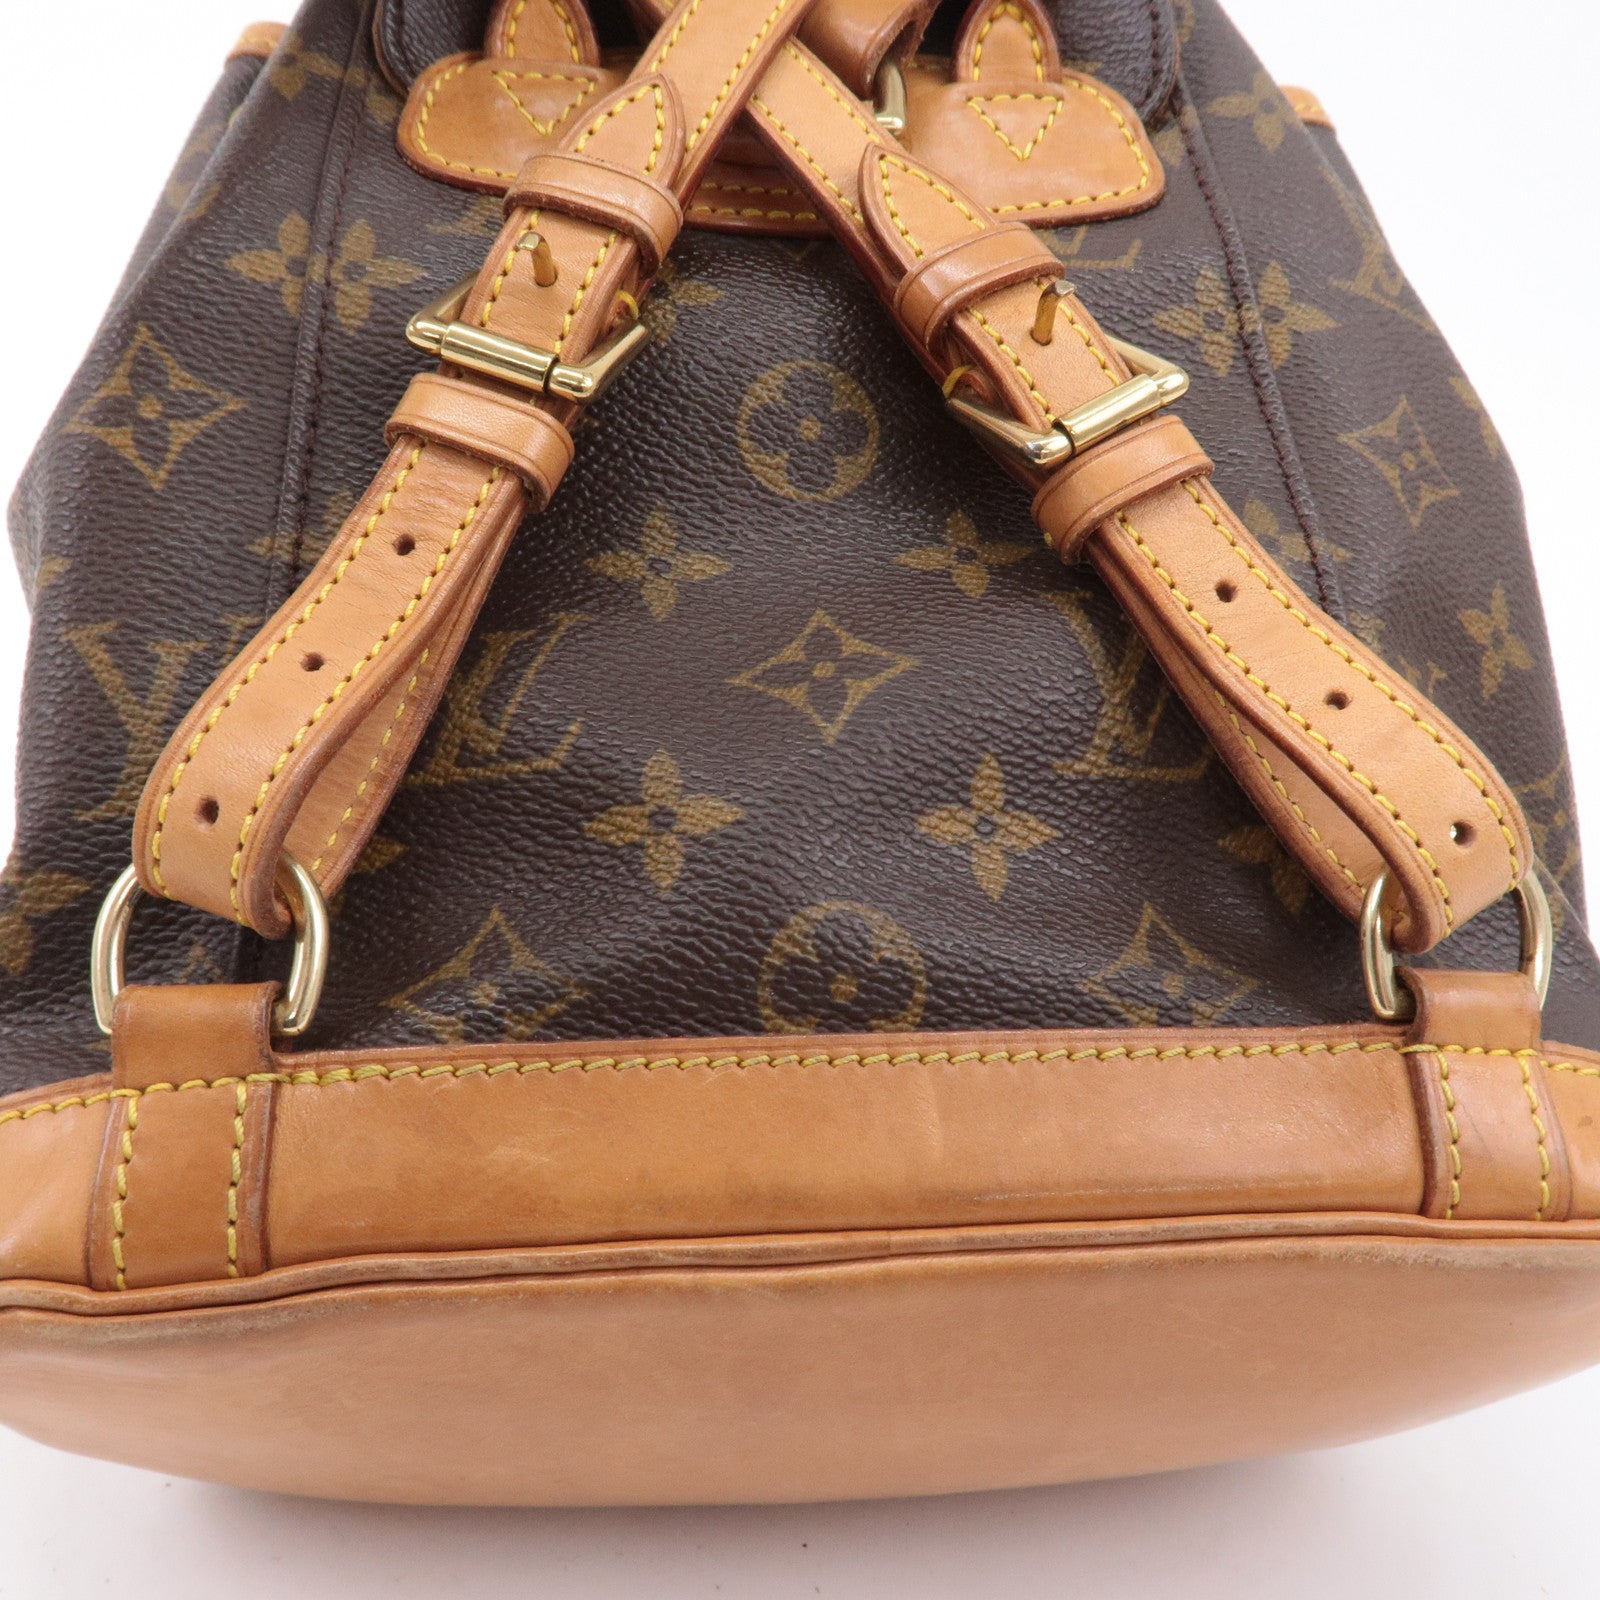 Louis Vuitton Mini Montsouris Backpack M51137